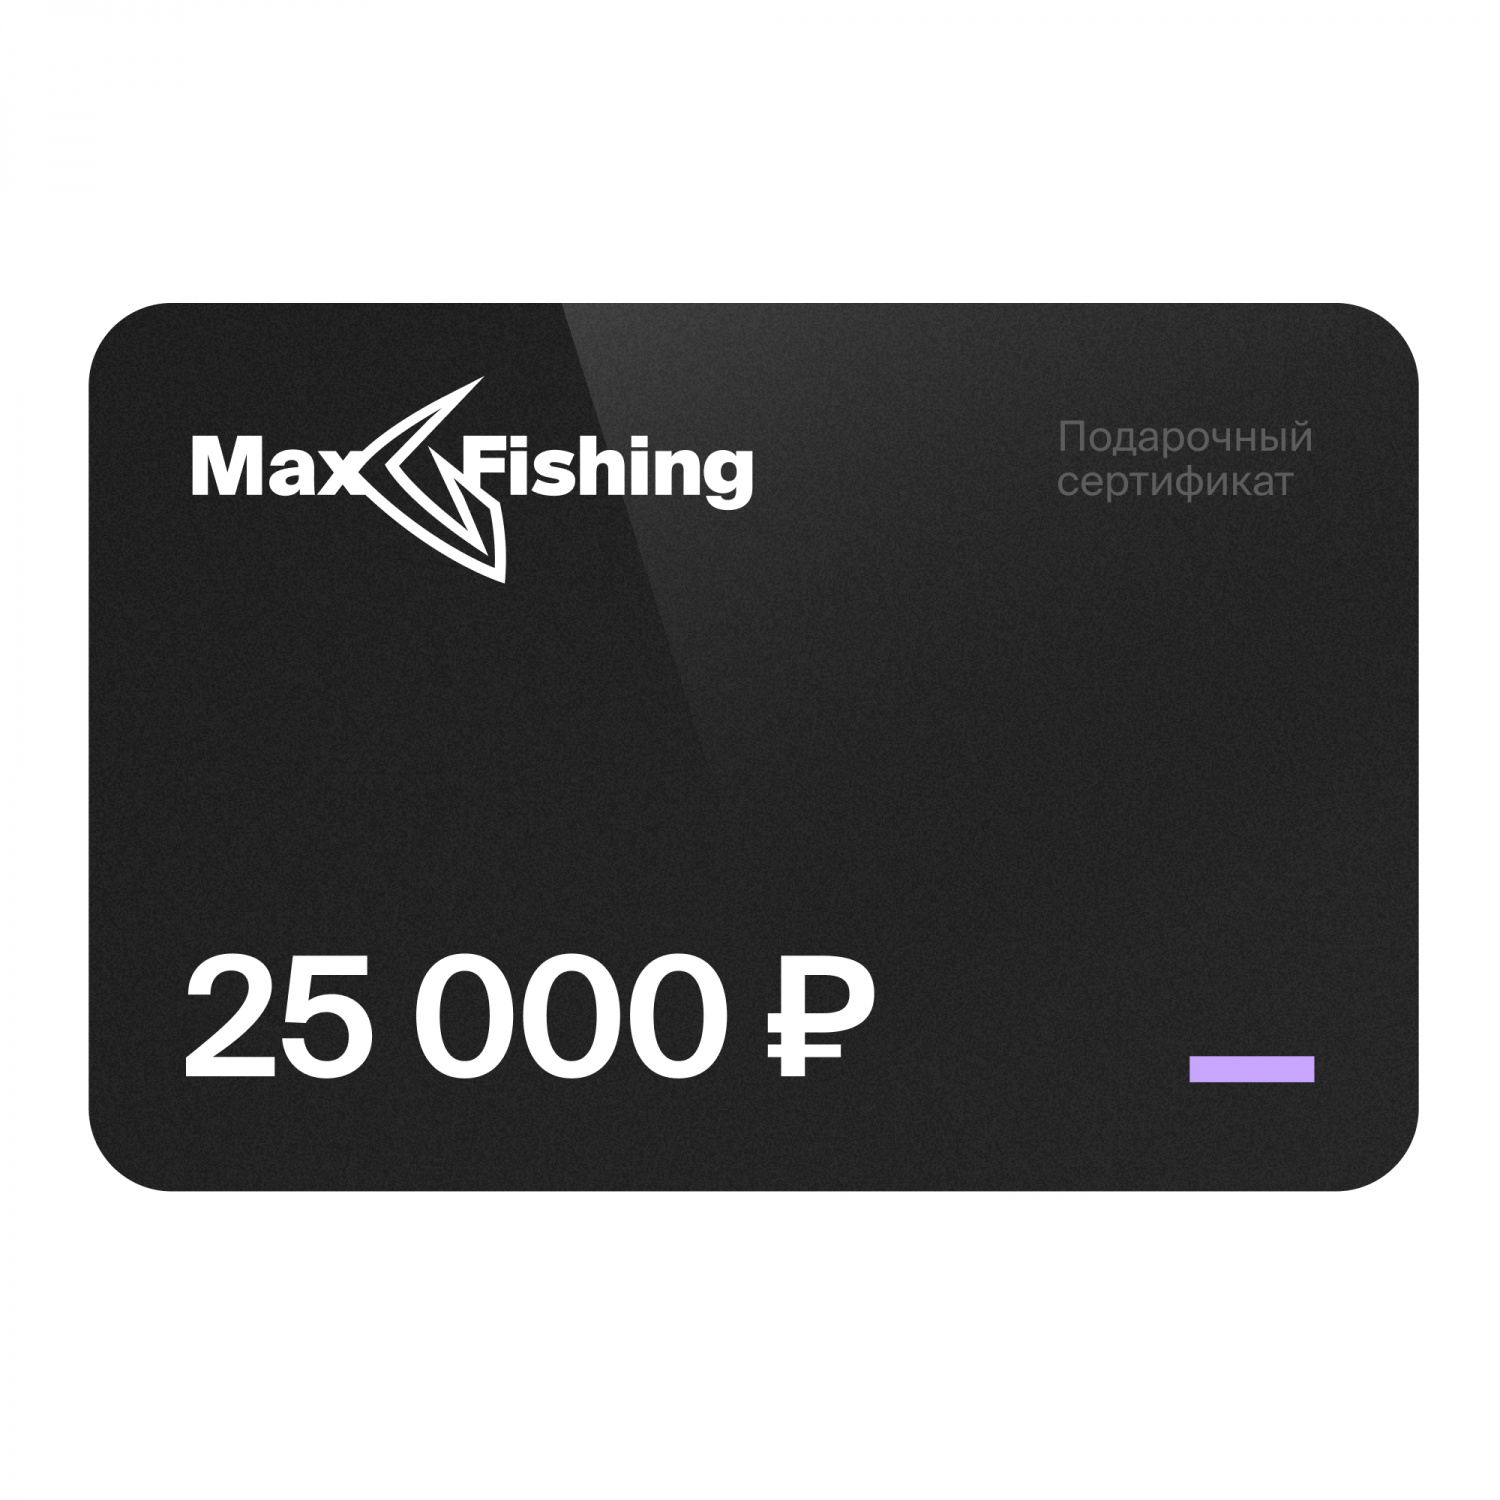 Подарочный сертификат MaxFishing 25 000 ₽ подарочный сертификат на 5 000 рублей